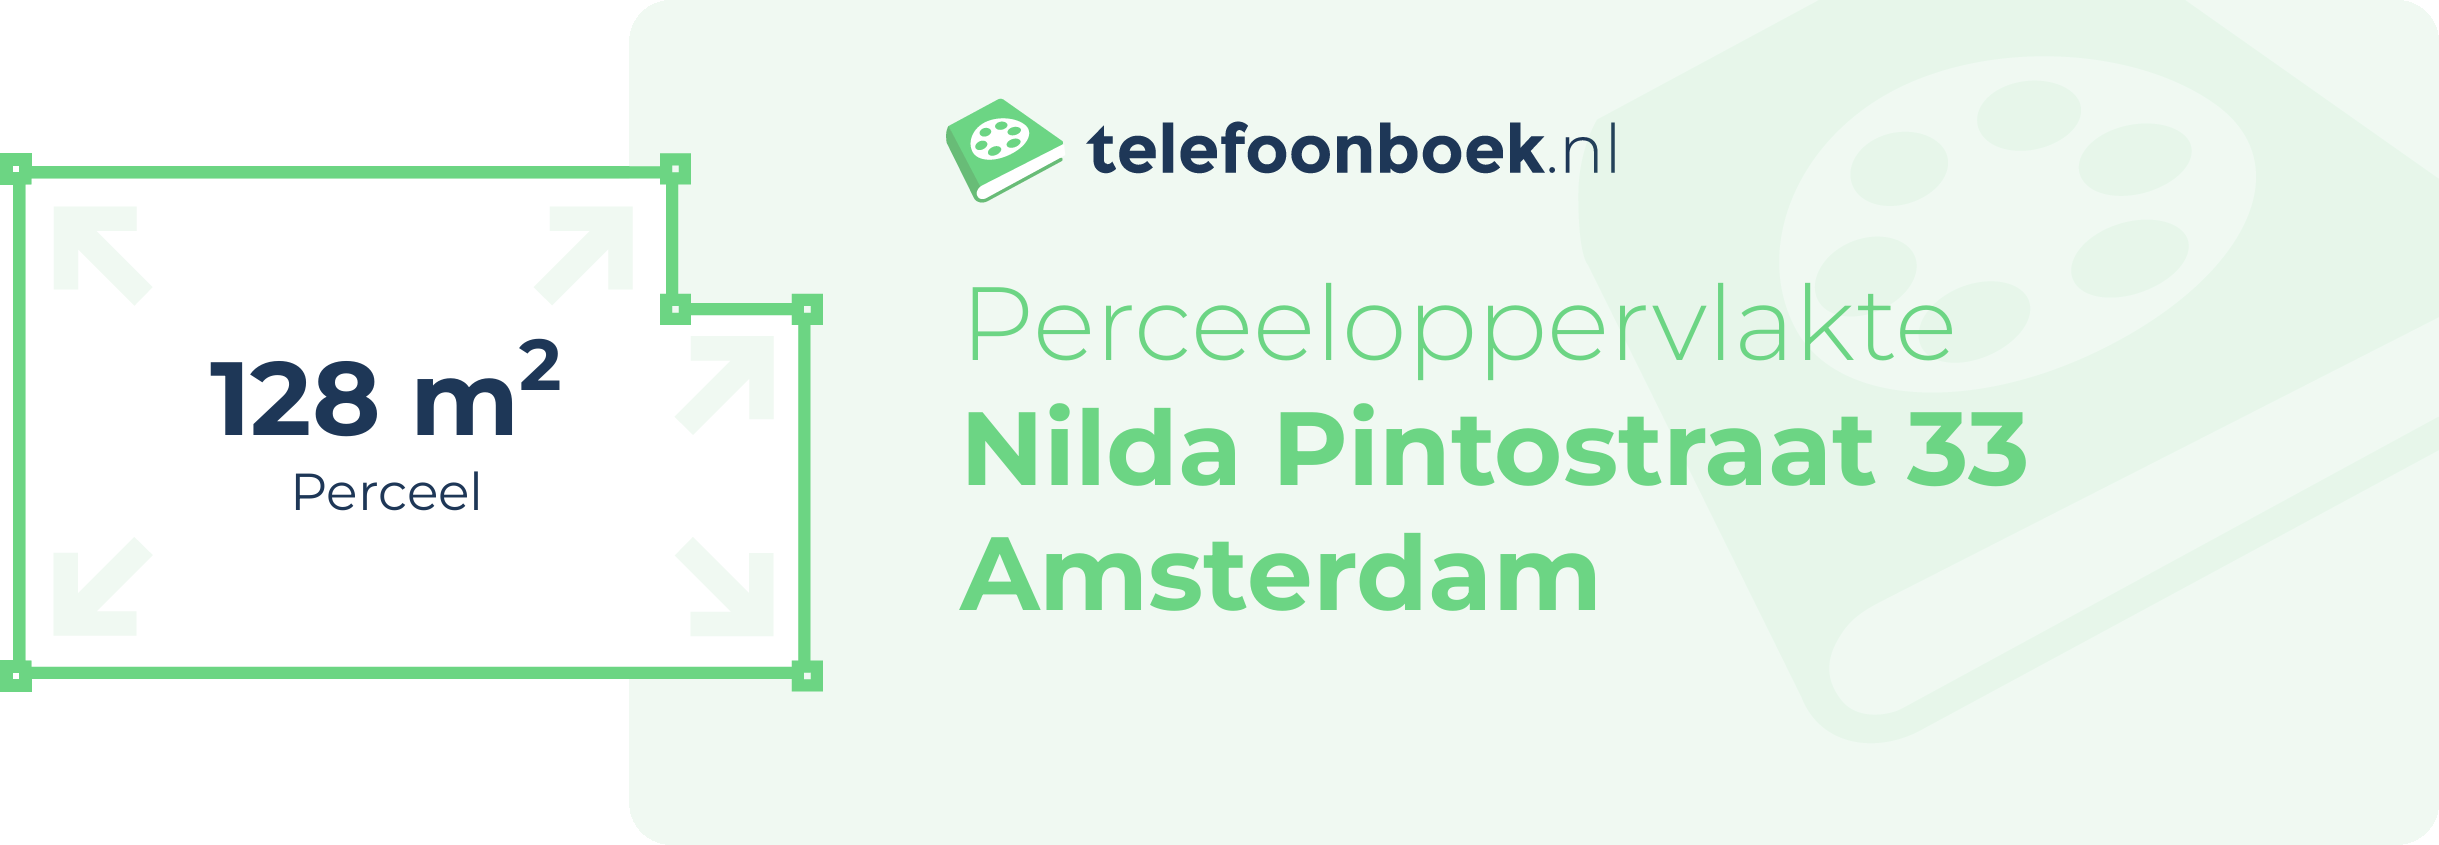 Perceeloppervlakte Nilda Pintostraat 33 Amsterdam